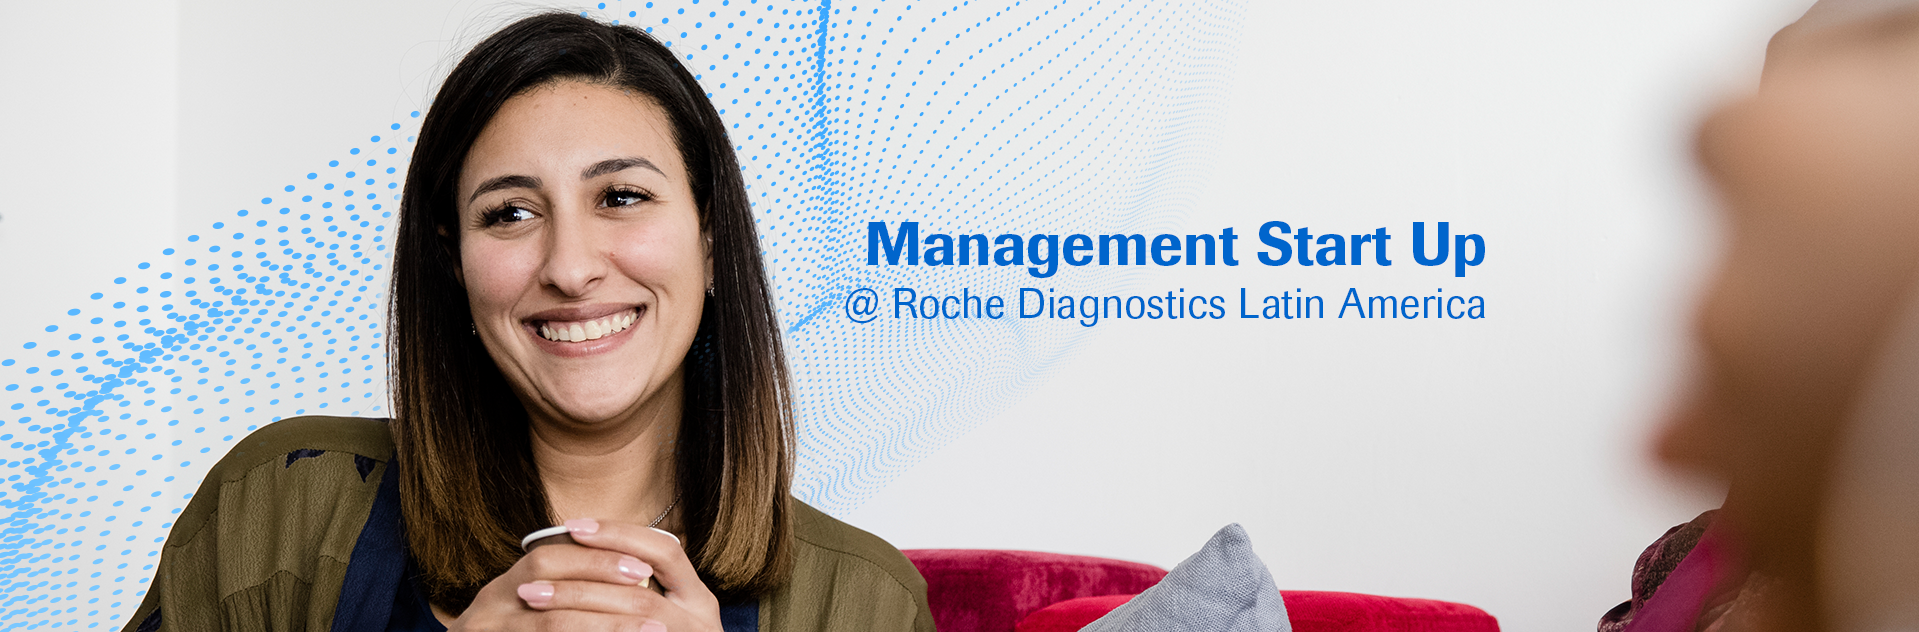 Roche Management Startup